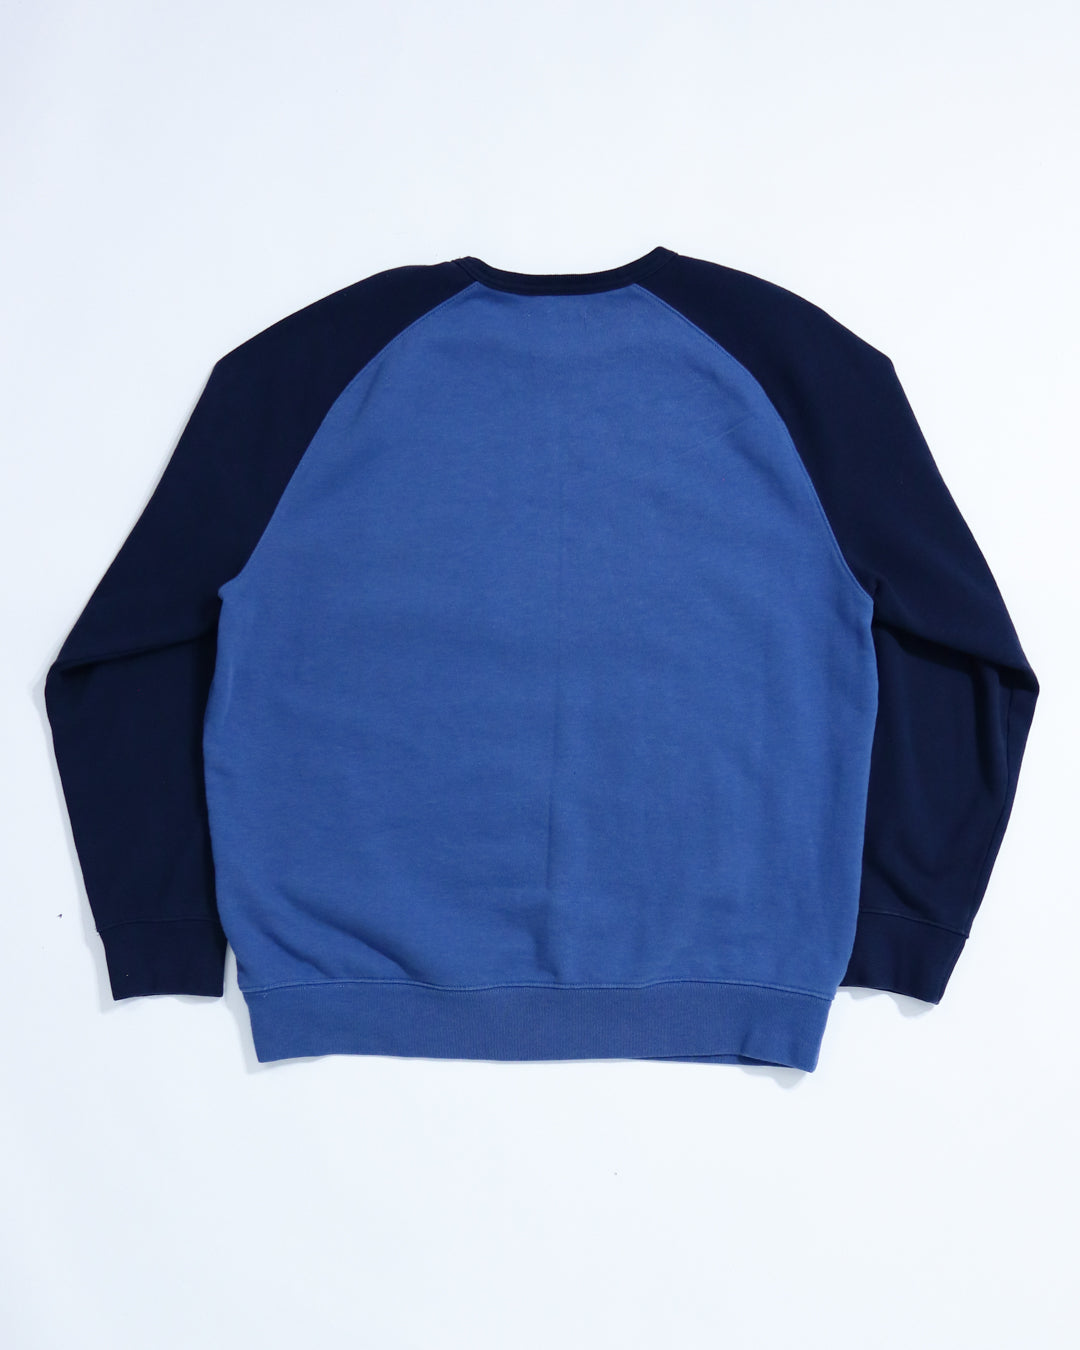 Blueprint University Sweatshirt - Blue/Navy (XXL)